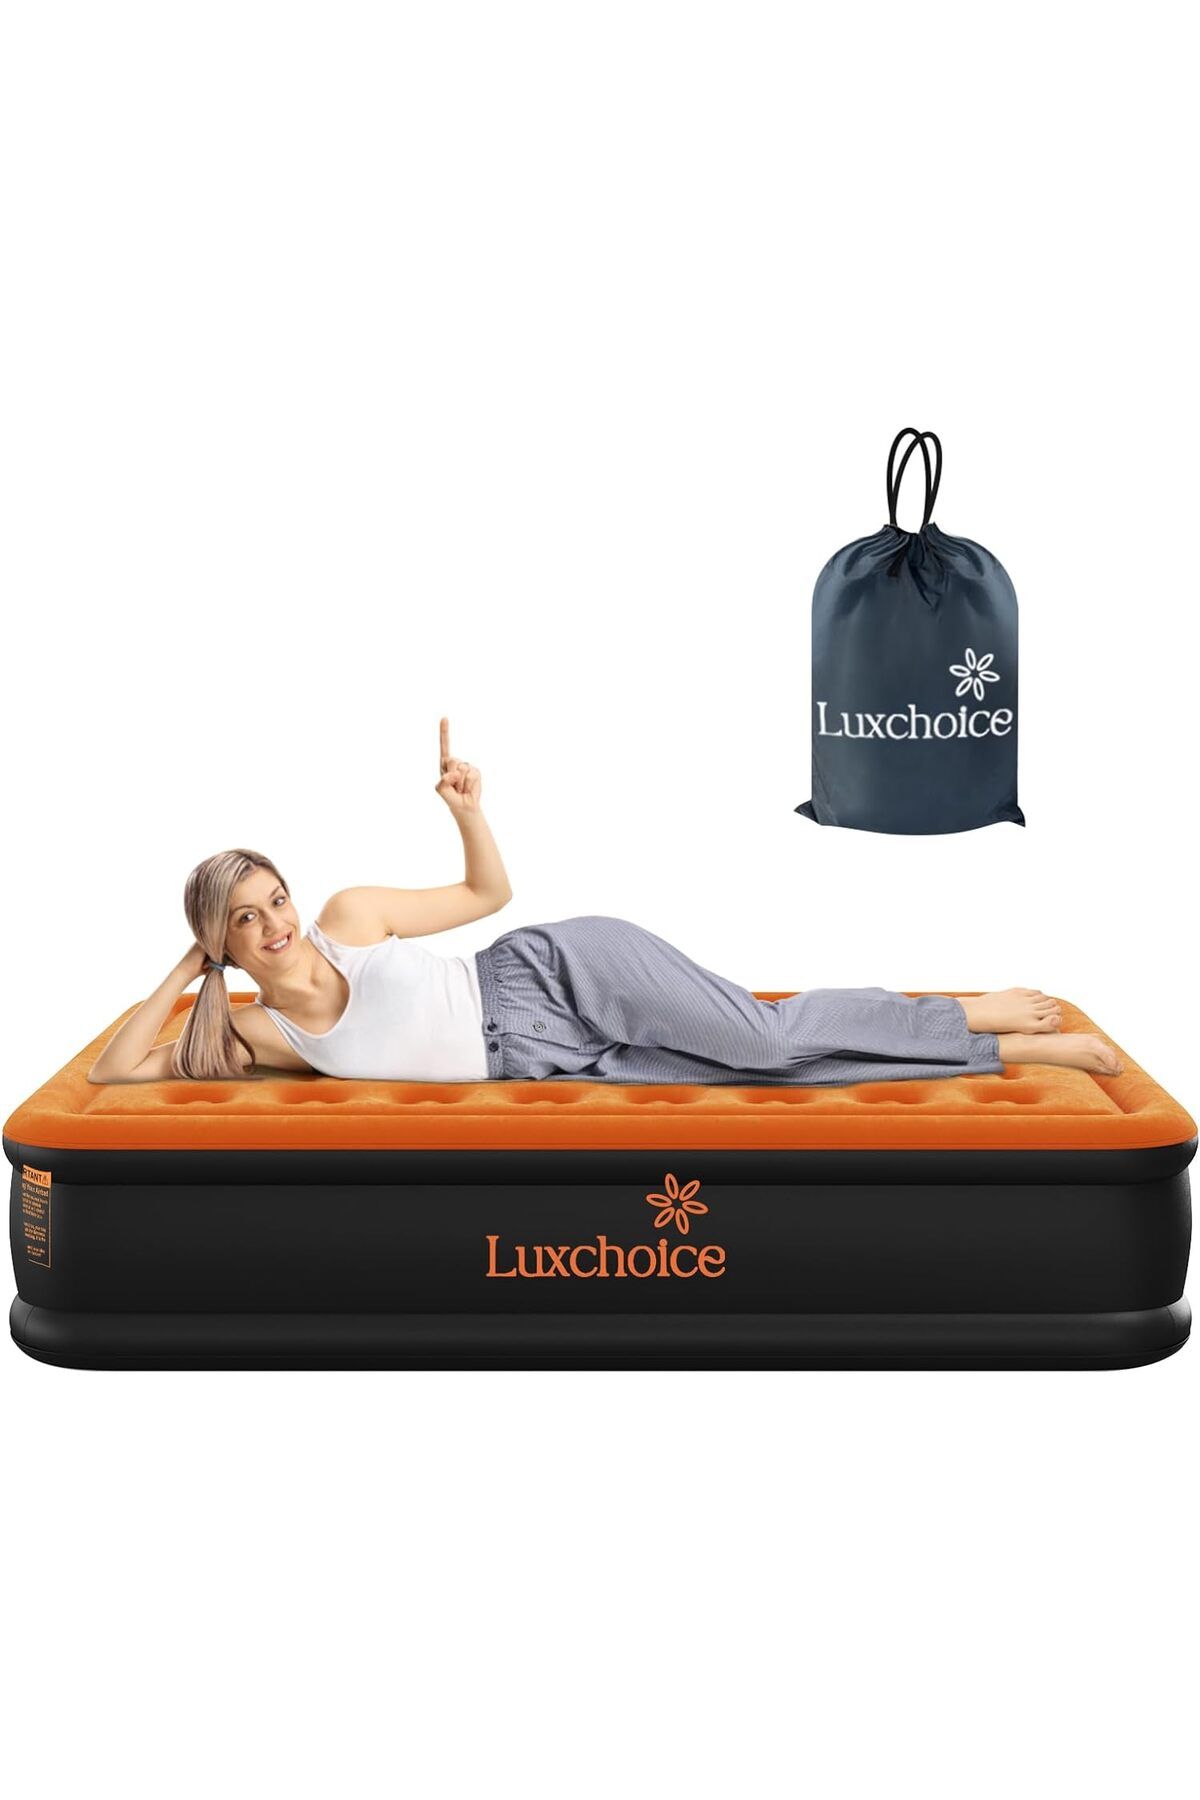 Luxchoice Premium Kendiliğinden Şişen 2 Kişilik Hava Yatağı: Rahatlık ve Şıklık Sunar